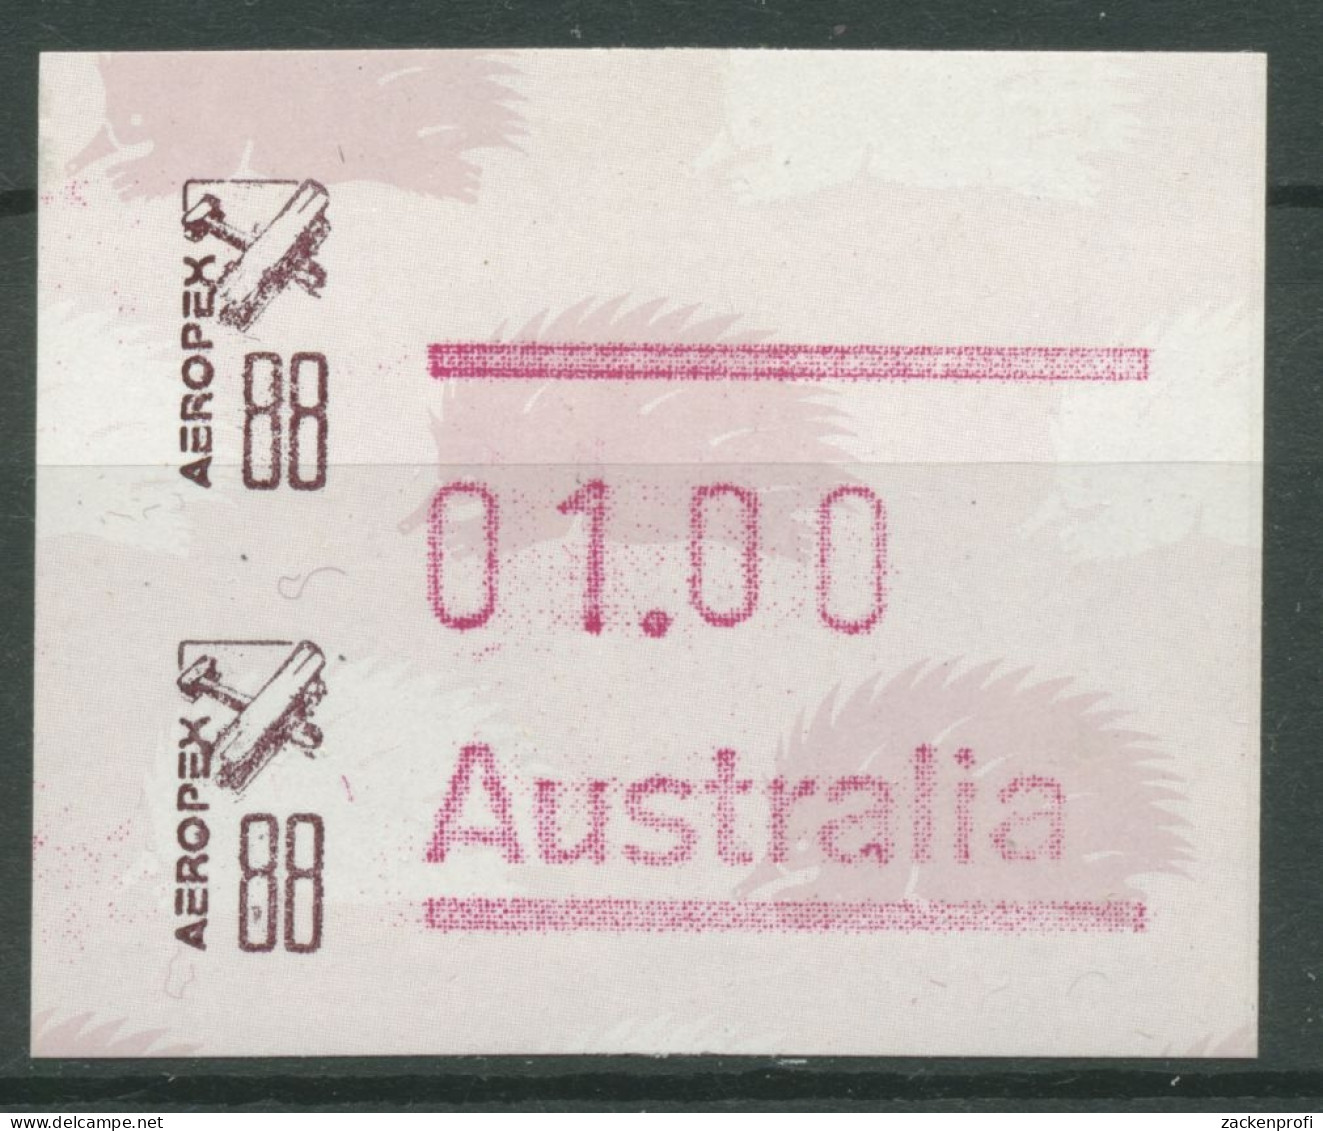 Australien 1988 AEROPEX '88 Adelaide Automatenmarke 10 Postfrisch - Automatenmarken [ATM]